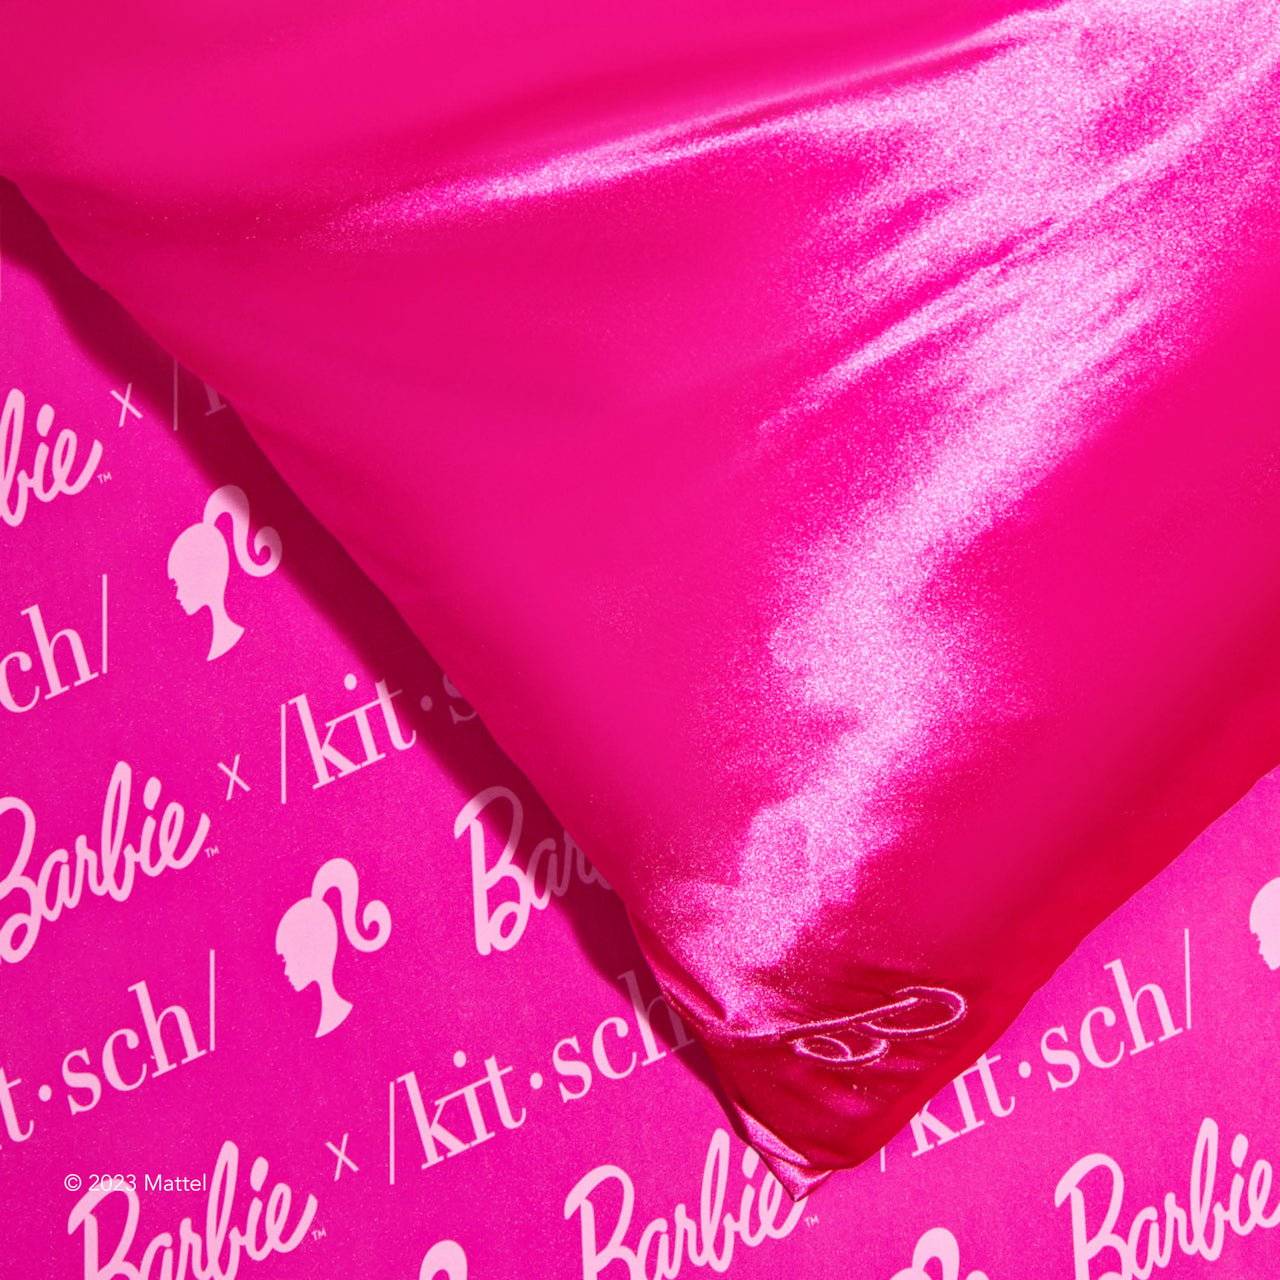 Barbie™ x Kitsch keräilypaketti